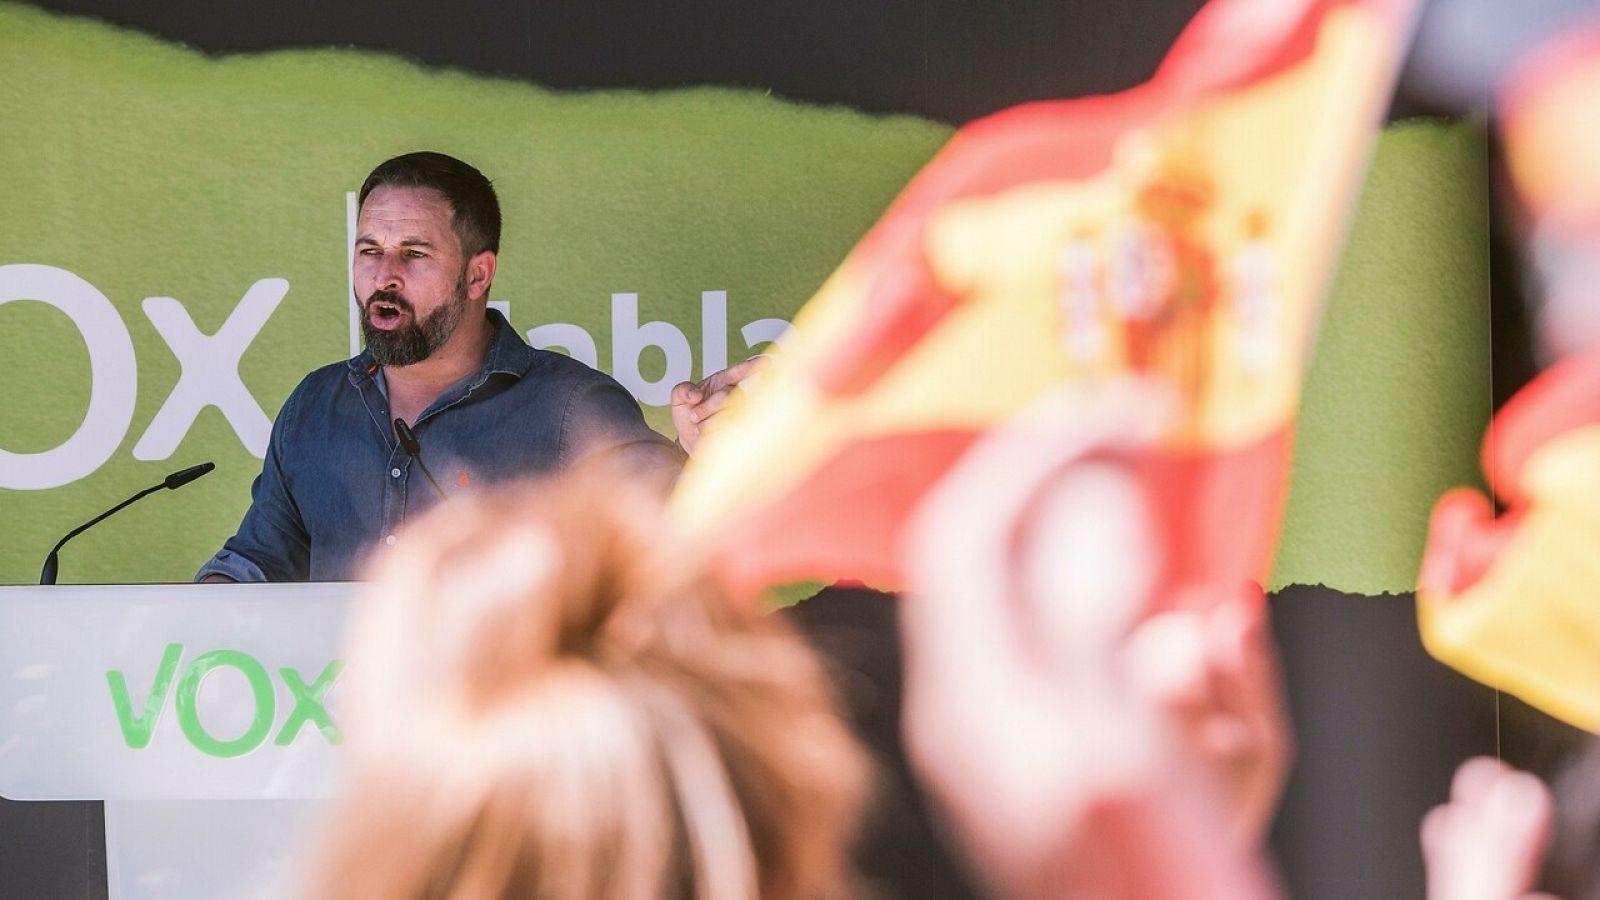 El líder de Vox, Santiago Abascal, ofrece un discurso durante un mitin en el País Vasco